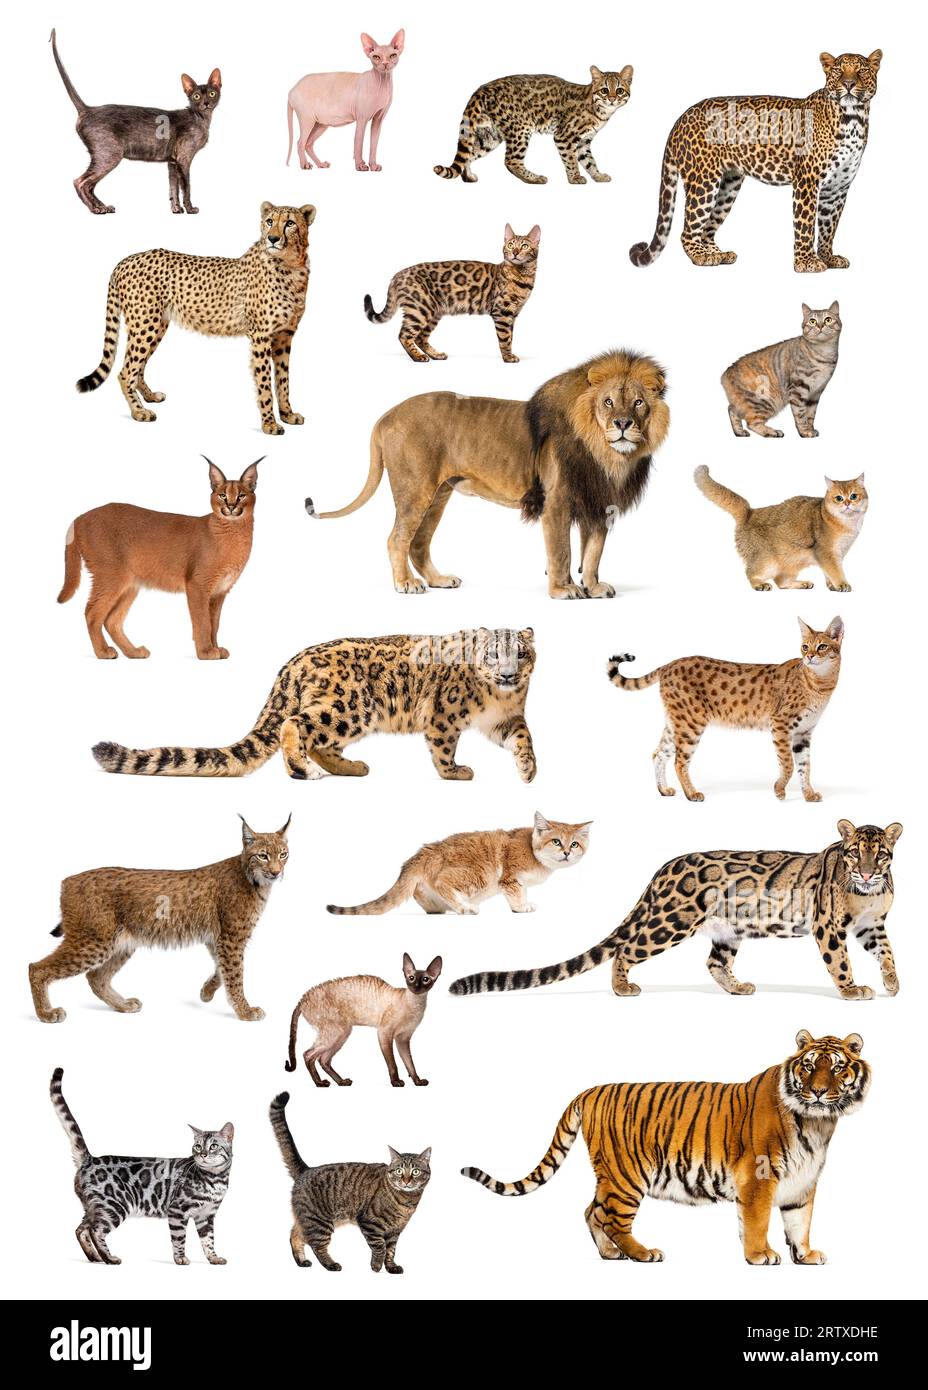 Poster mit verschiedenen Rassen und Katzenarten, sowohl wild als auch privat, isoliert auf weiß Stockfoto